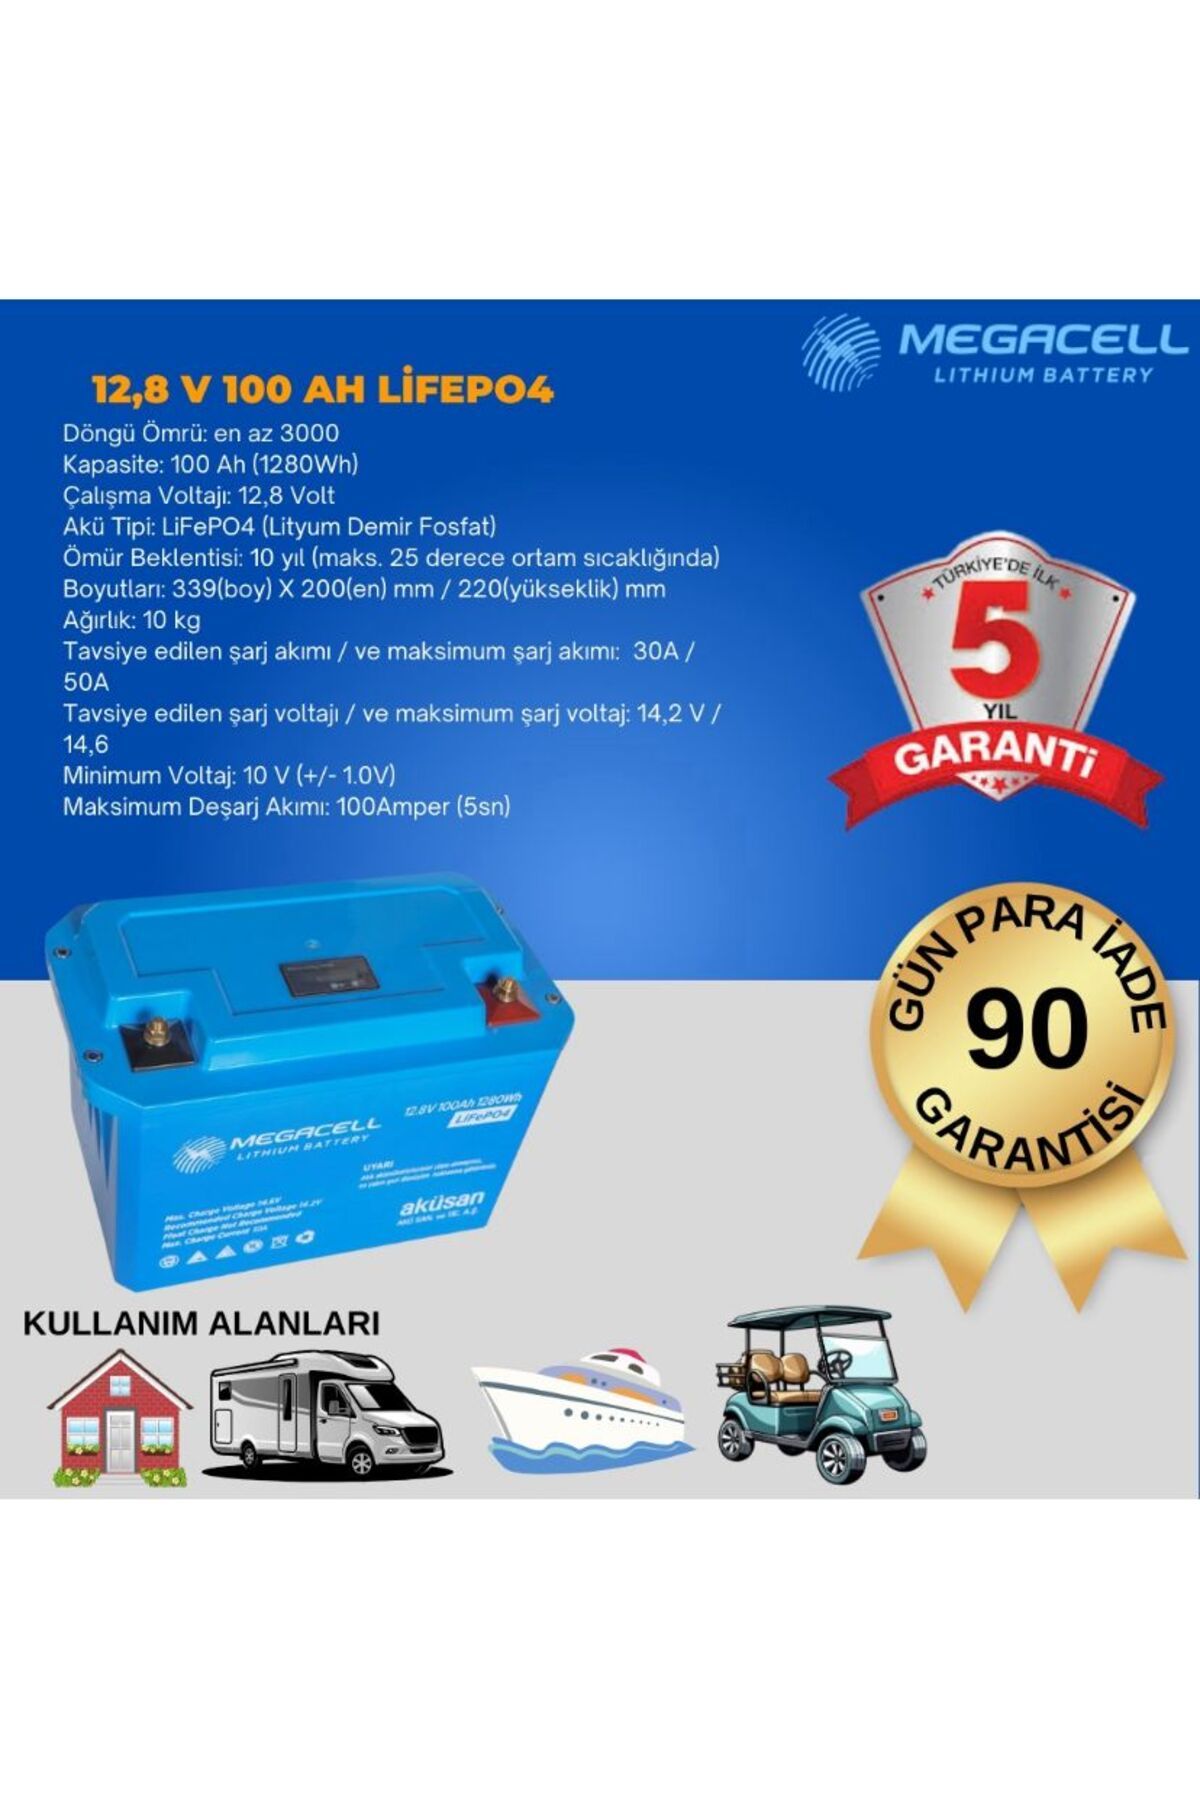 Megacell Megacel 12.8 Volt 100 Amper Lityum Akü Abs Kasa - 12.8 V 100 Ah Lıfepo4 1280 Wh